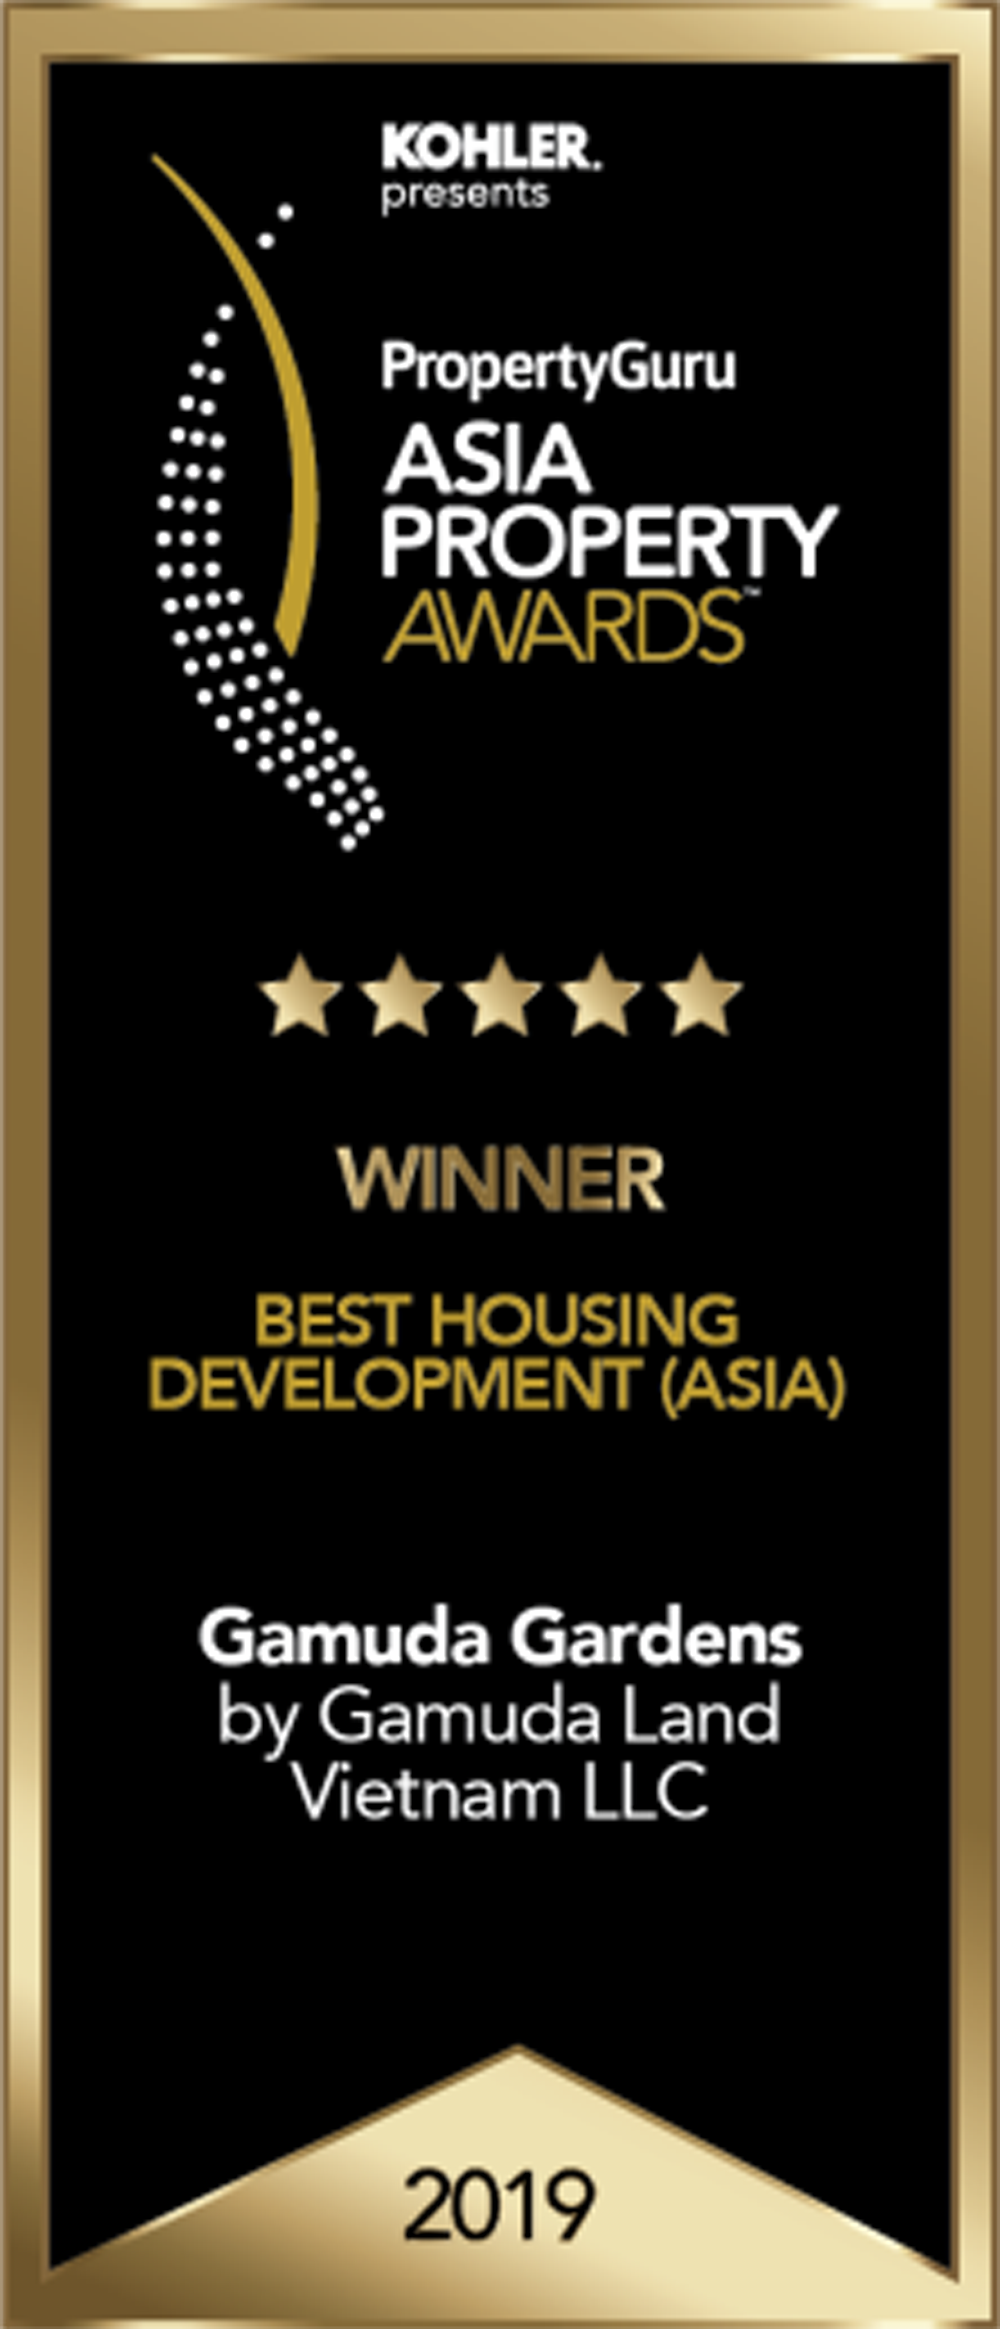 PropertyGuru Asia Property Awards là giải thưởng hàng đầu dành cho những thương hiệu bất động sản tốt bậc nhất châu Á. Đây là giải thưởng cực kỳ danh tiếng với hệ thống chấm giải độc lập và đơn vị giám sát uy tín trên thị trường quốc tế